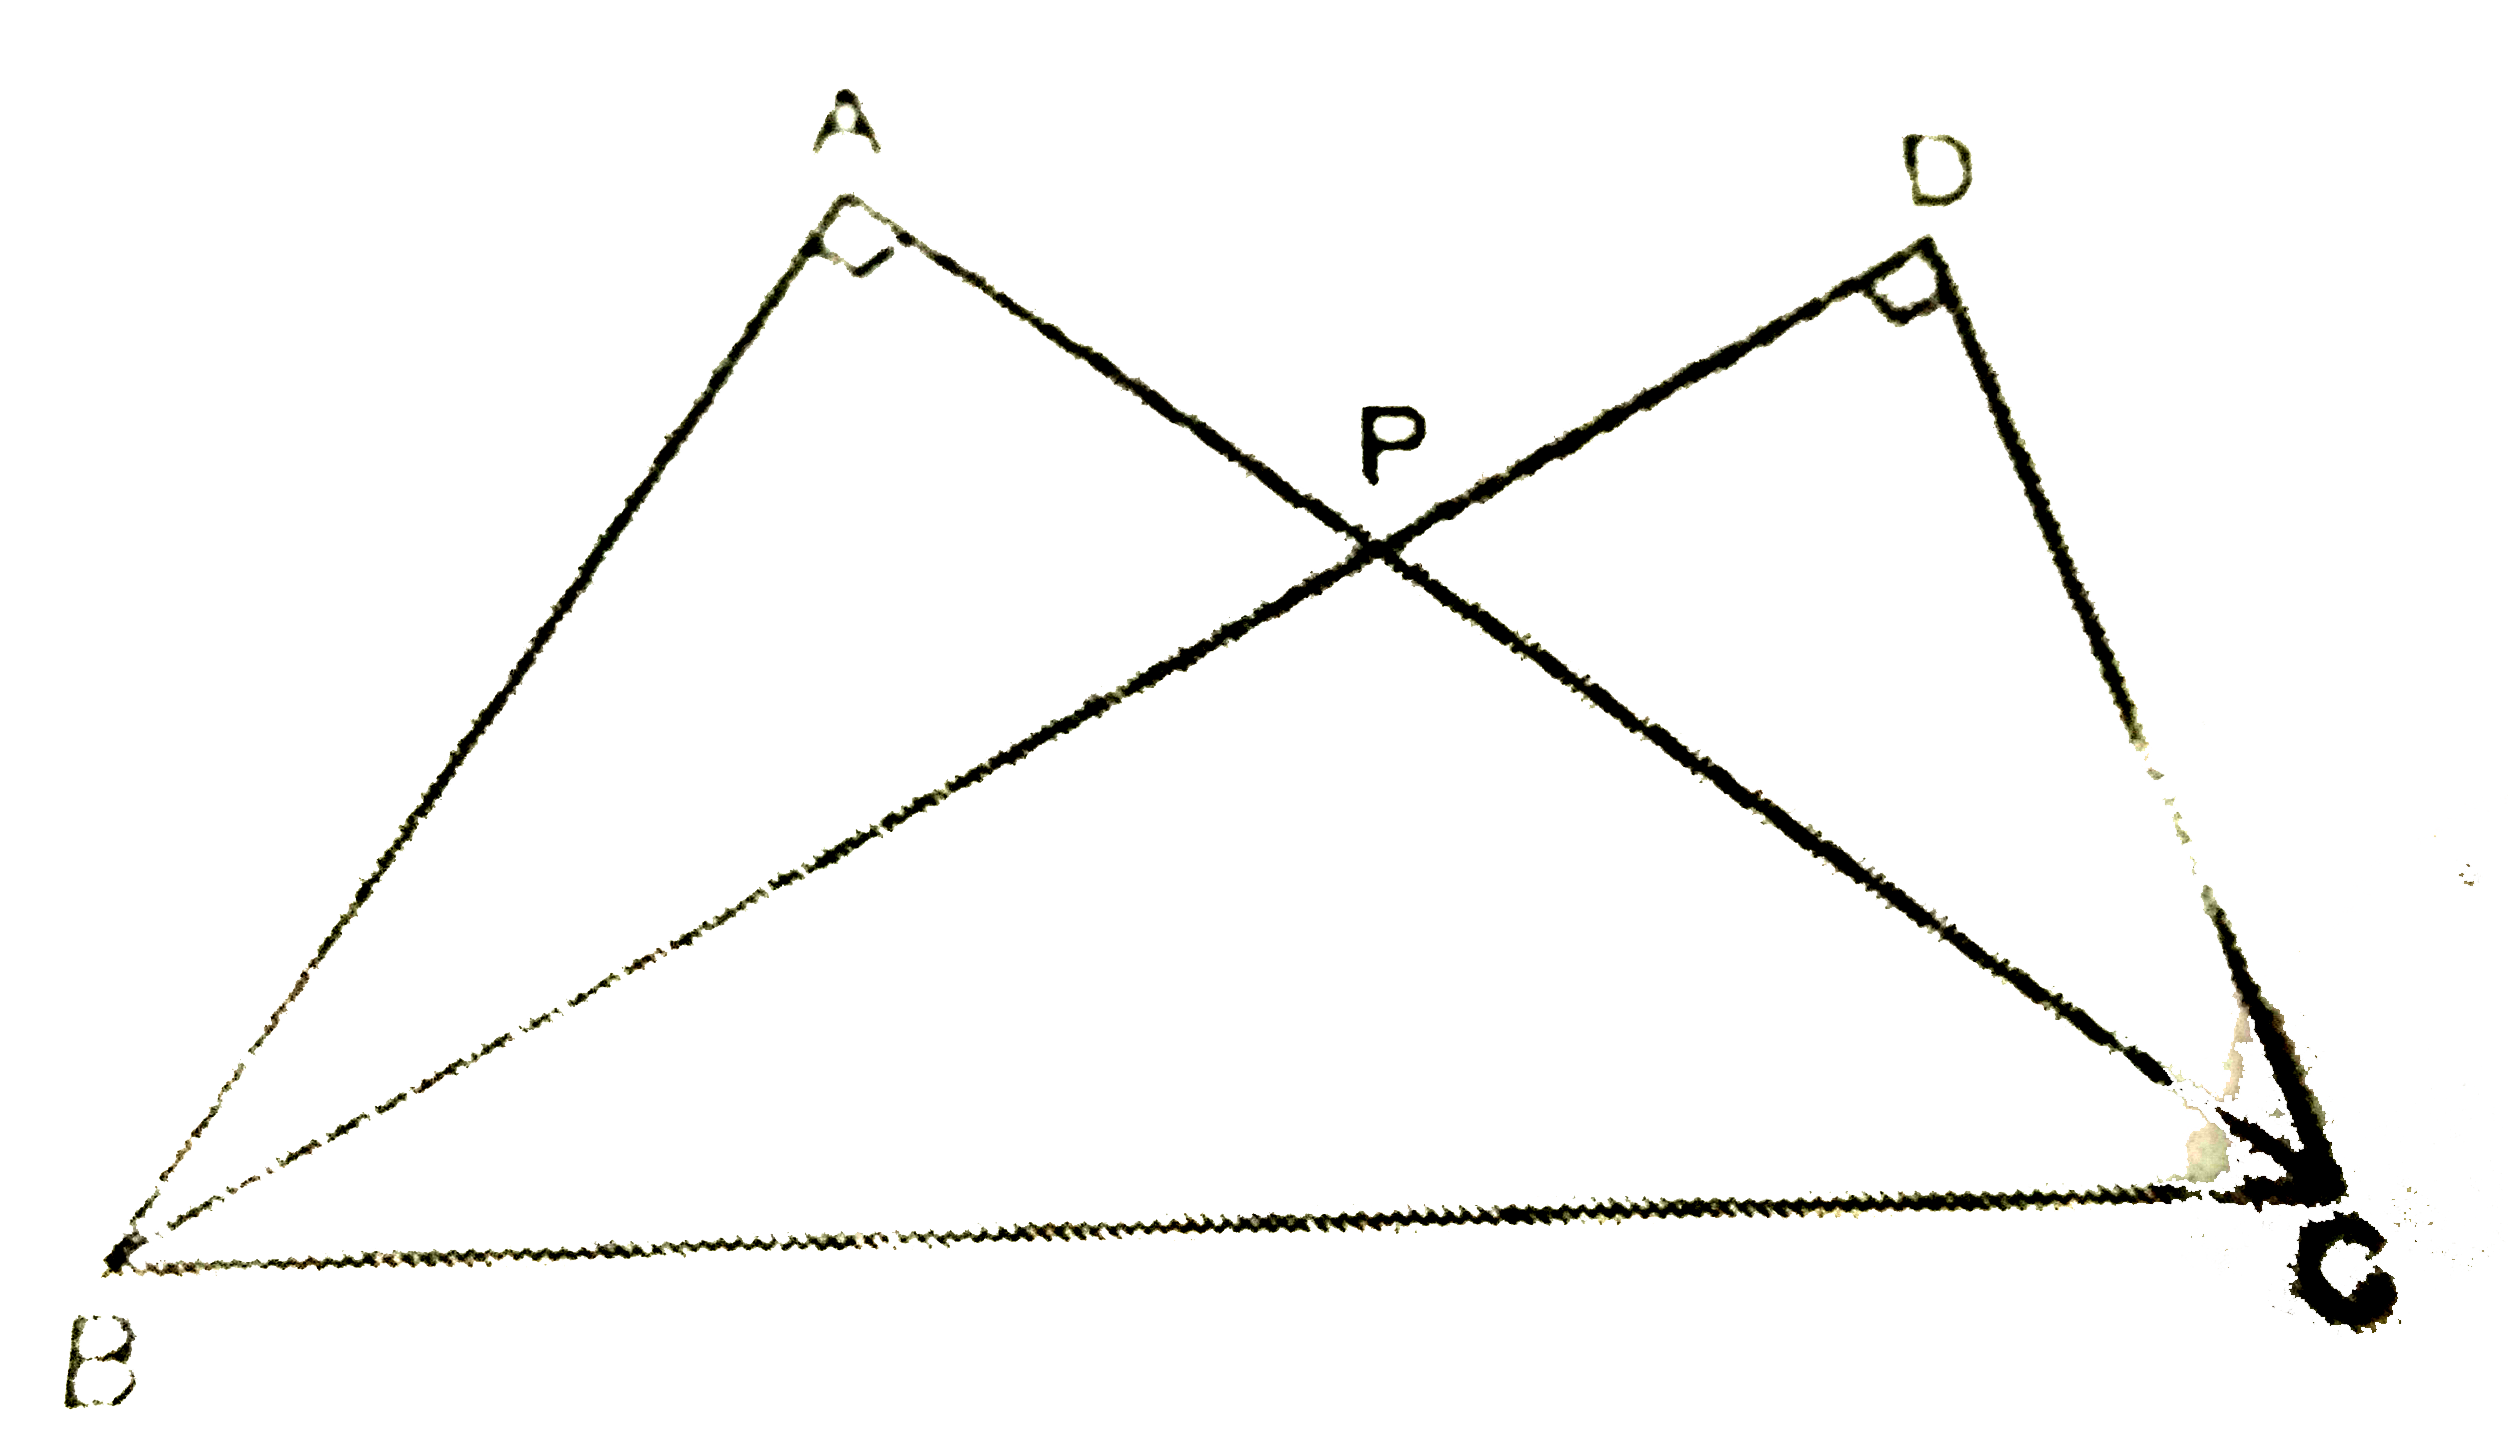 चित्र  में , उभयनिष्ट  विकर्ण  BC  के  दो  समकोण  त्रिभुज  ABC  तथा  DBC  हैं  तथा  भुजाएँ  AC   तथा  DB  एक  - दूसरे  को  एक  बिन्दु  P  पर  प्रतिच्छेद  करती हैं । सिद्ध  कीजिए  कि   AP.PC = DP. PB.